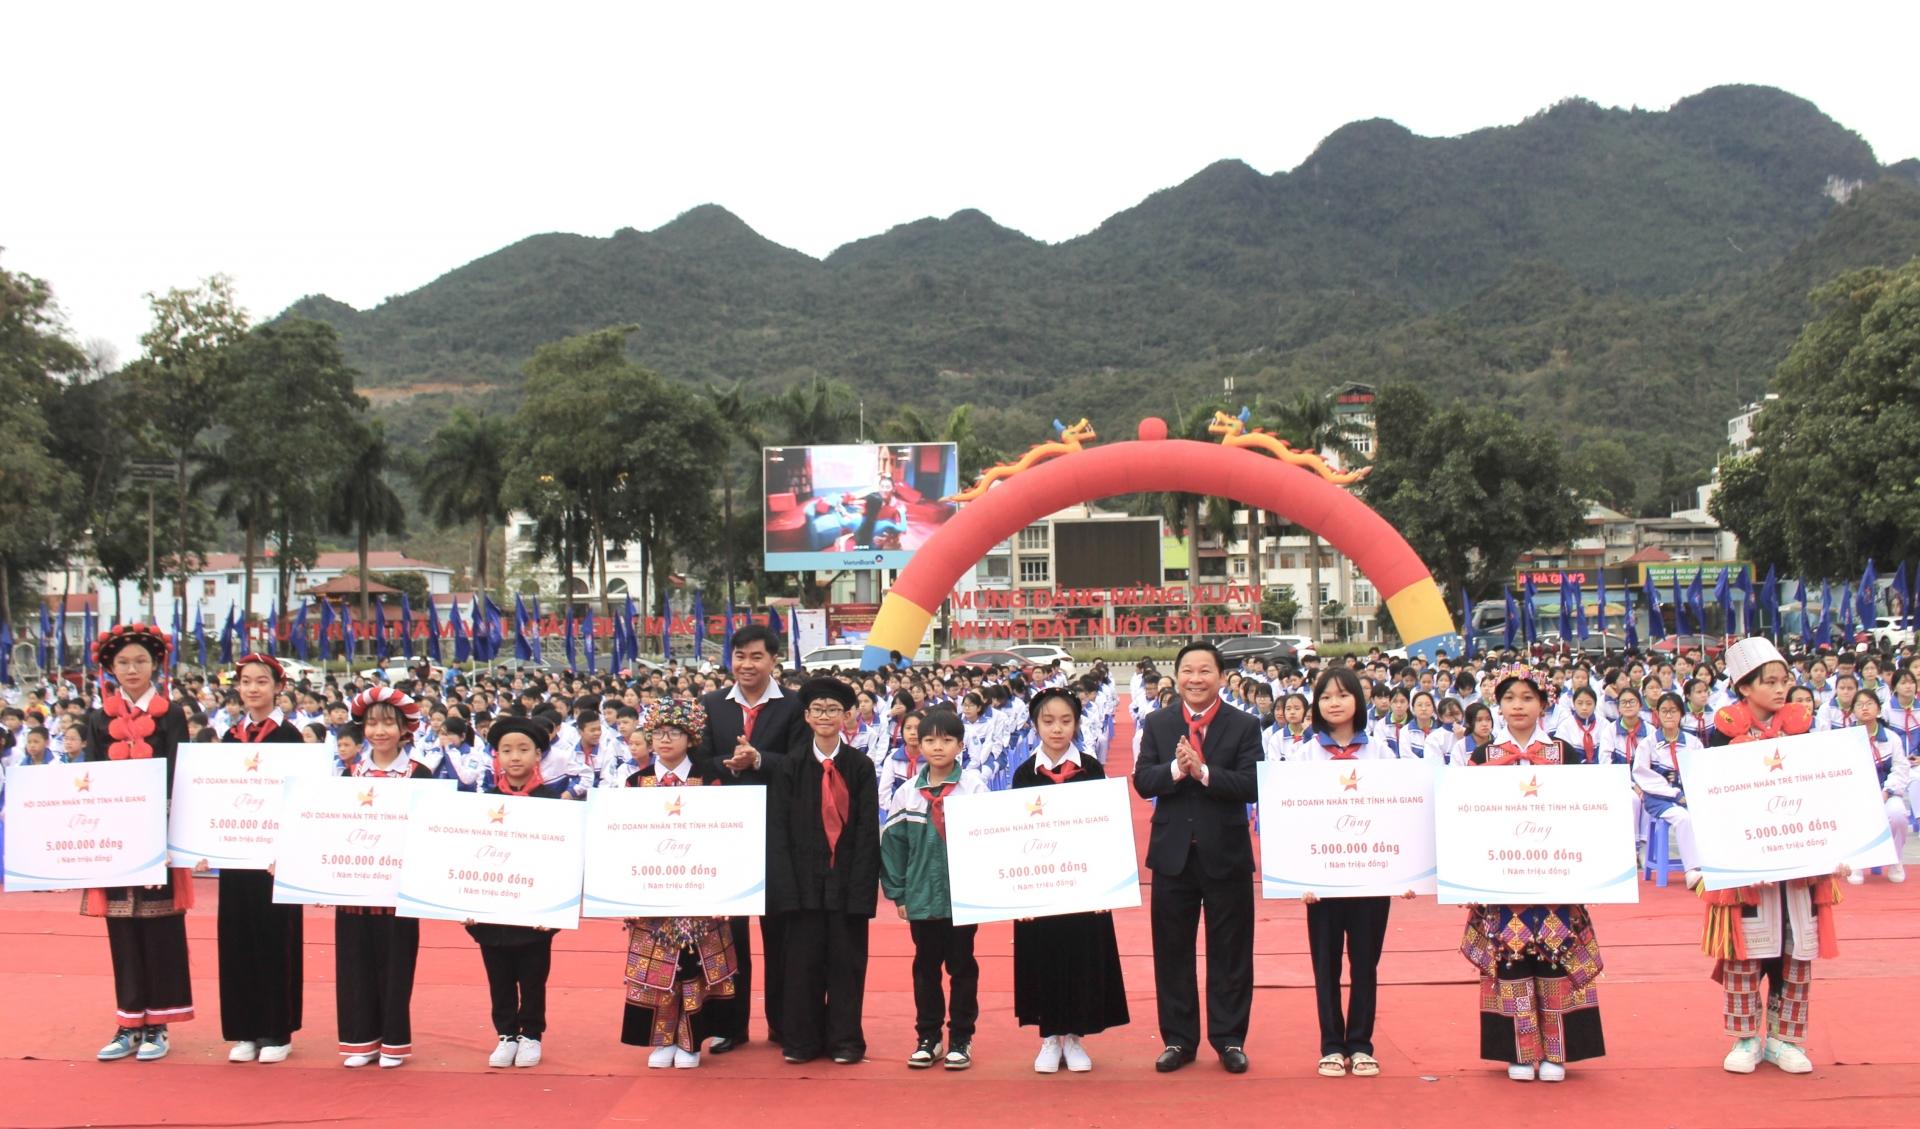 Đồng chí Hoàng Văn Vịnh và Hội Doanh nhân trẻ tặng quà cho Hội đồng đội các huyện, thành phố